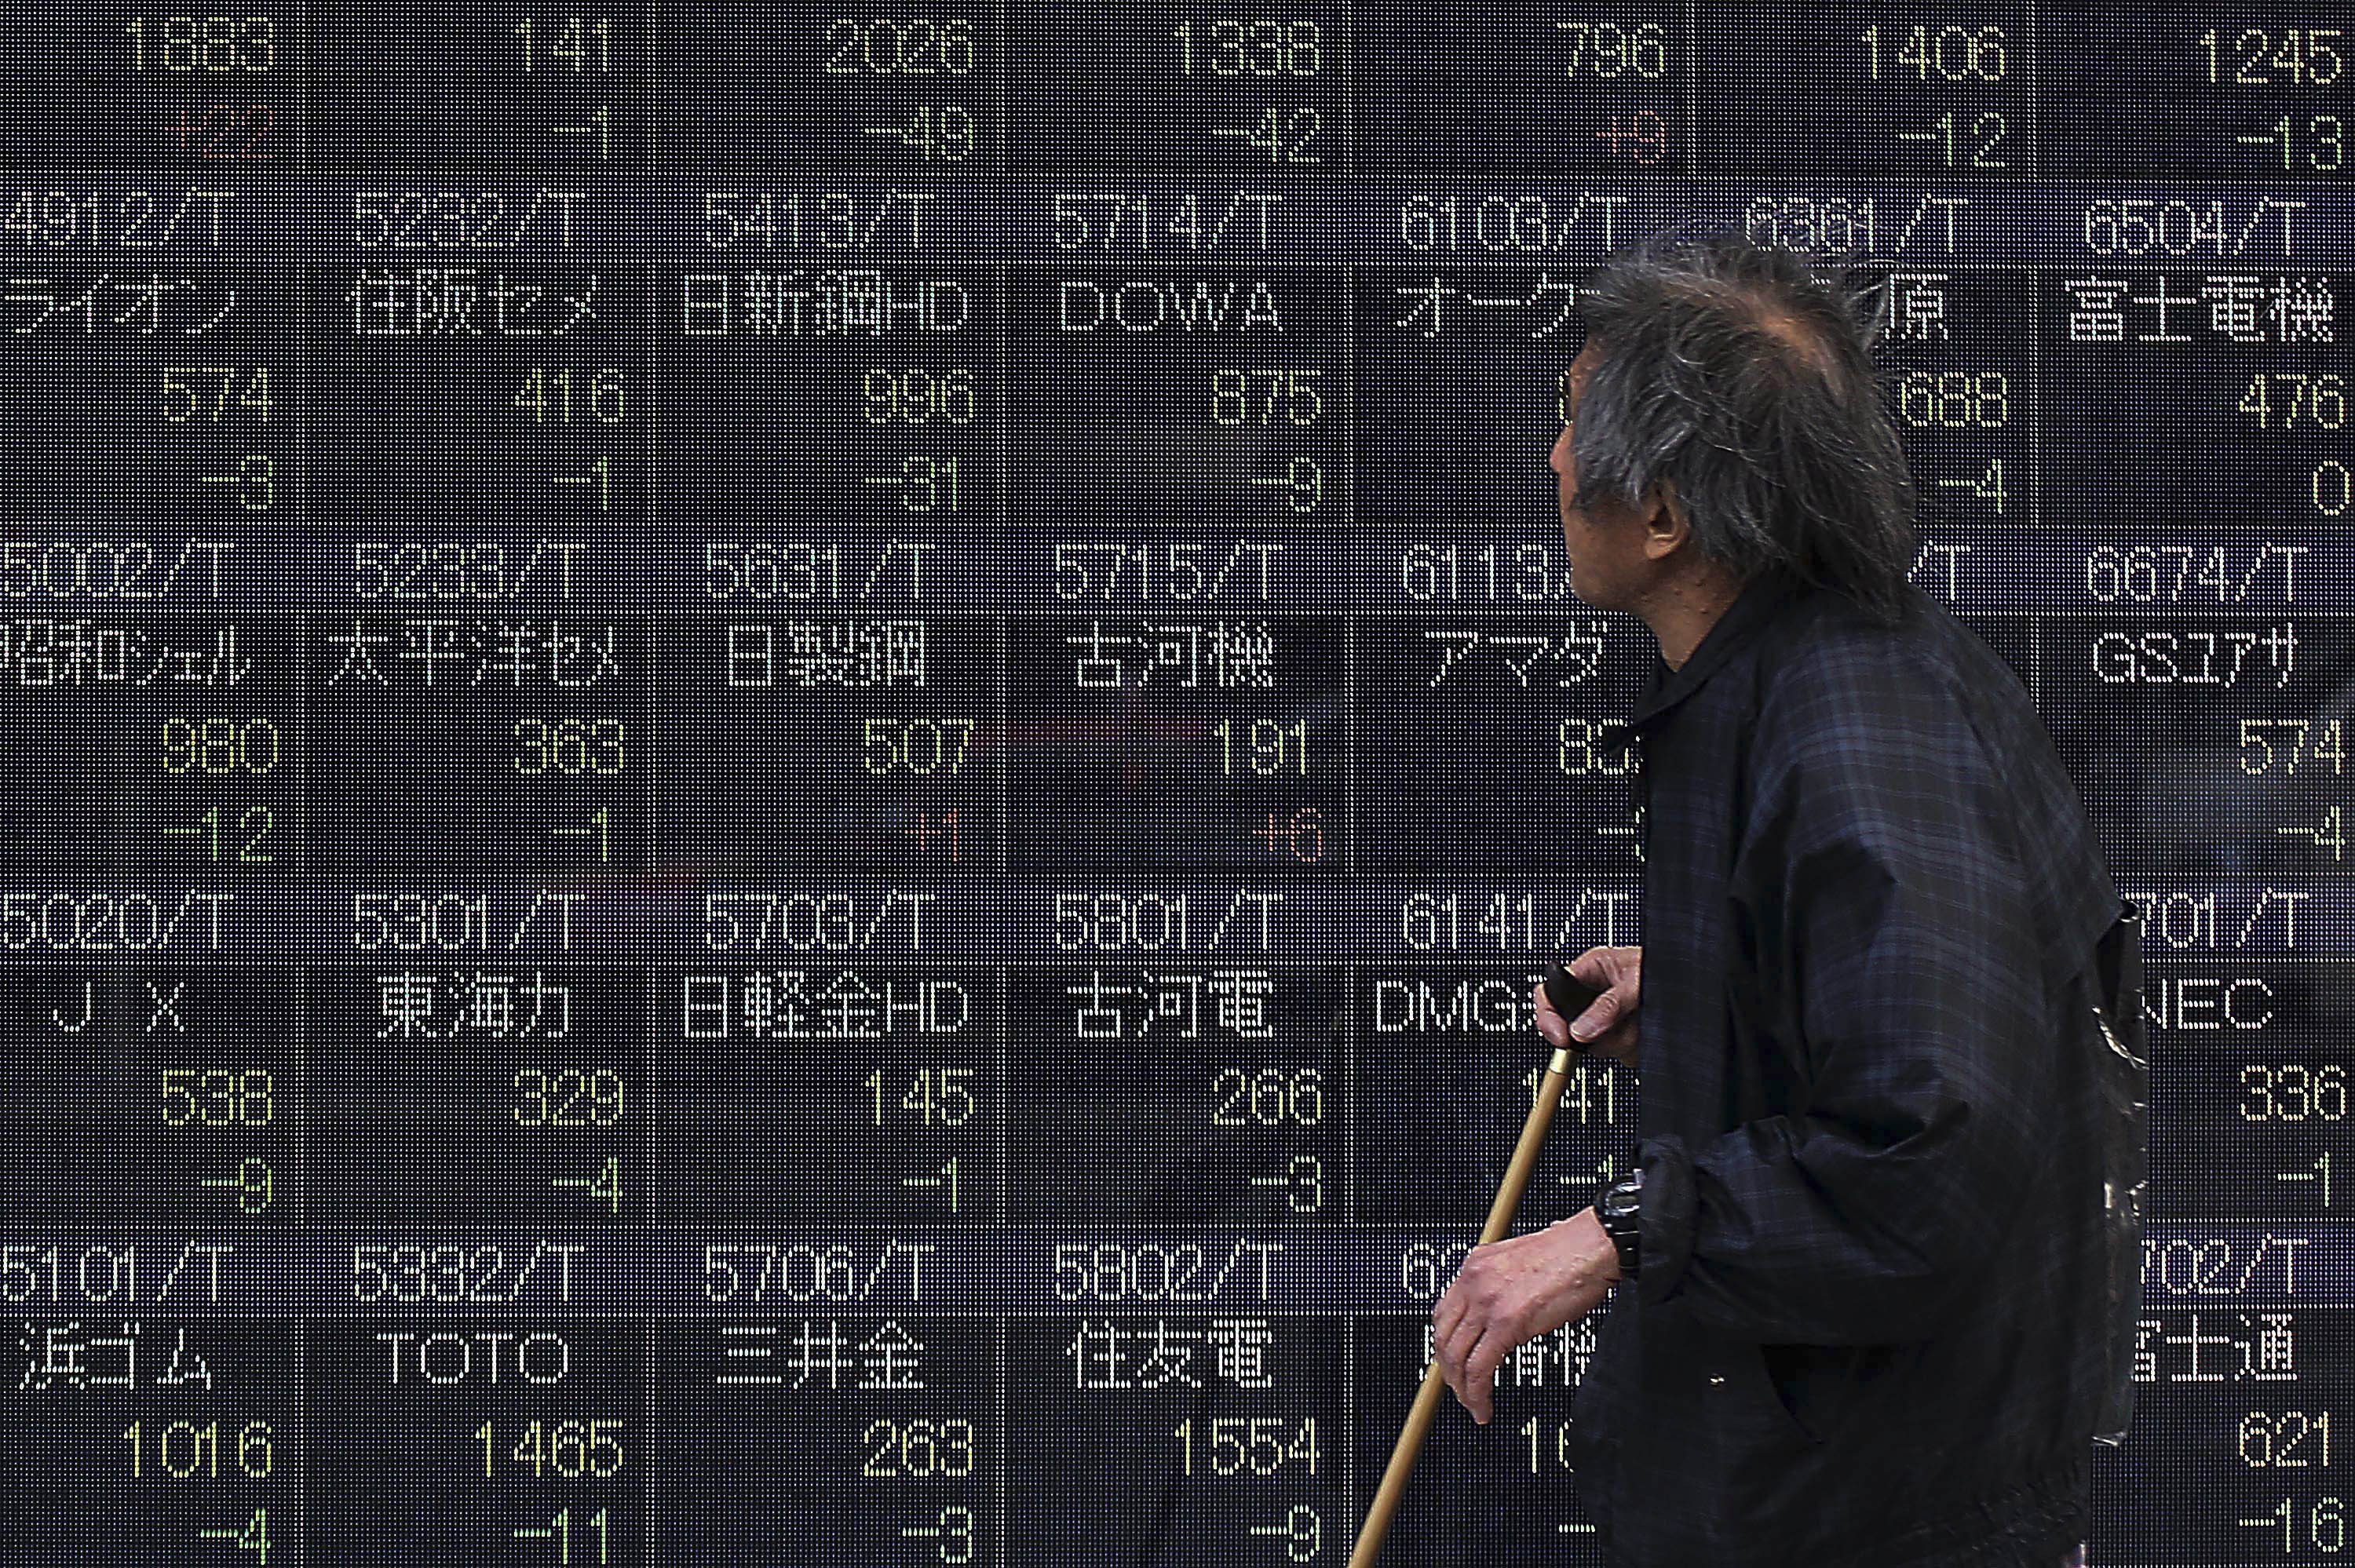 Ιαπωνία: Μειώθηκε η οικονομική ανάπτυξή της στο δ΄ τρίμηνο 2013